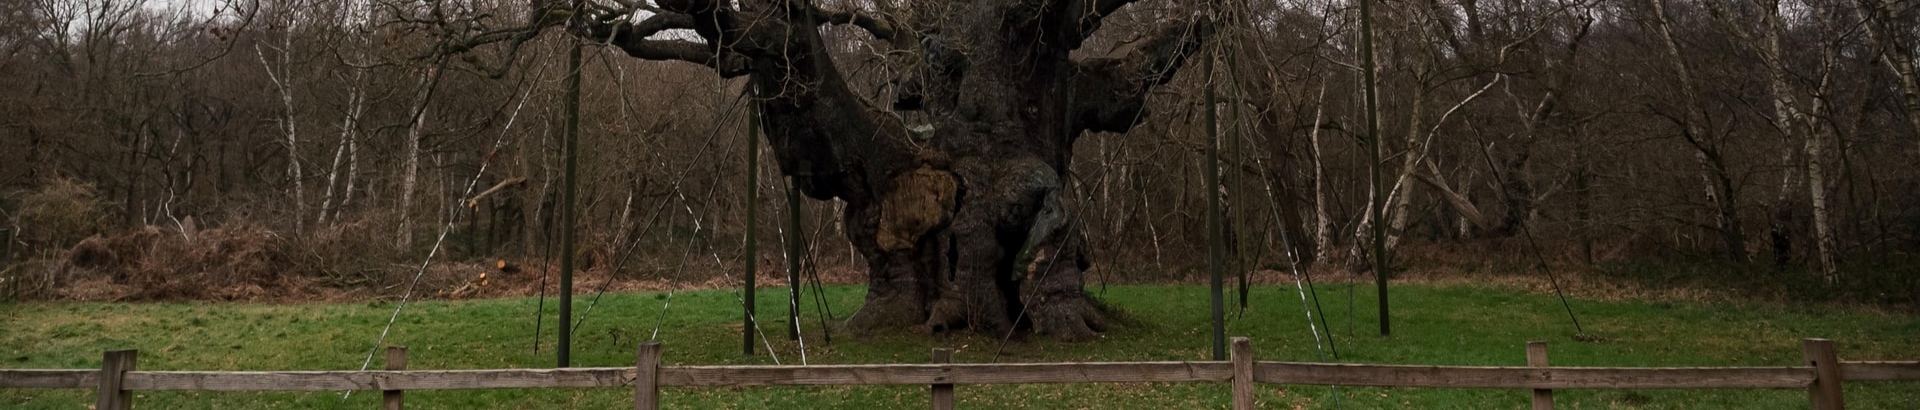 major oak tree in edwinstowe, mansfield